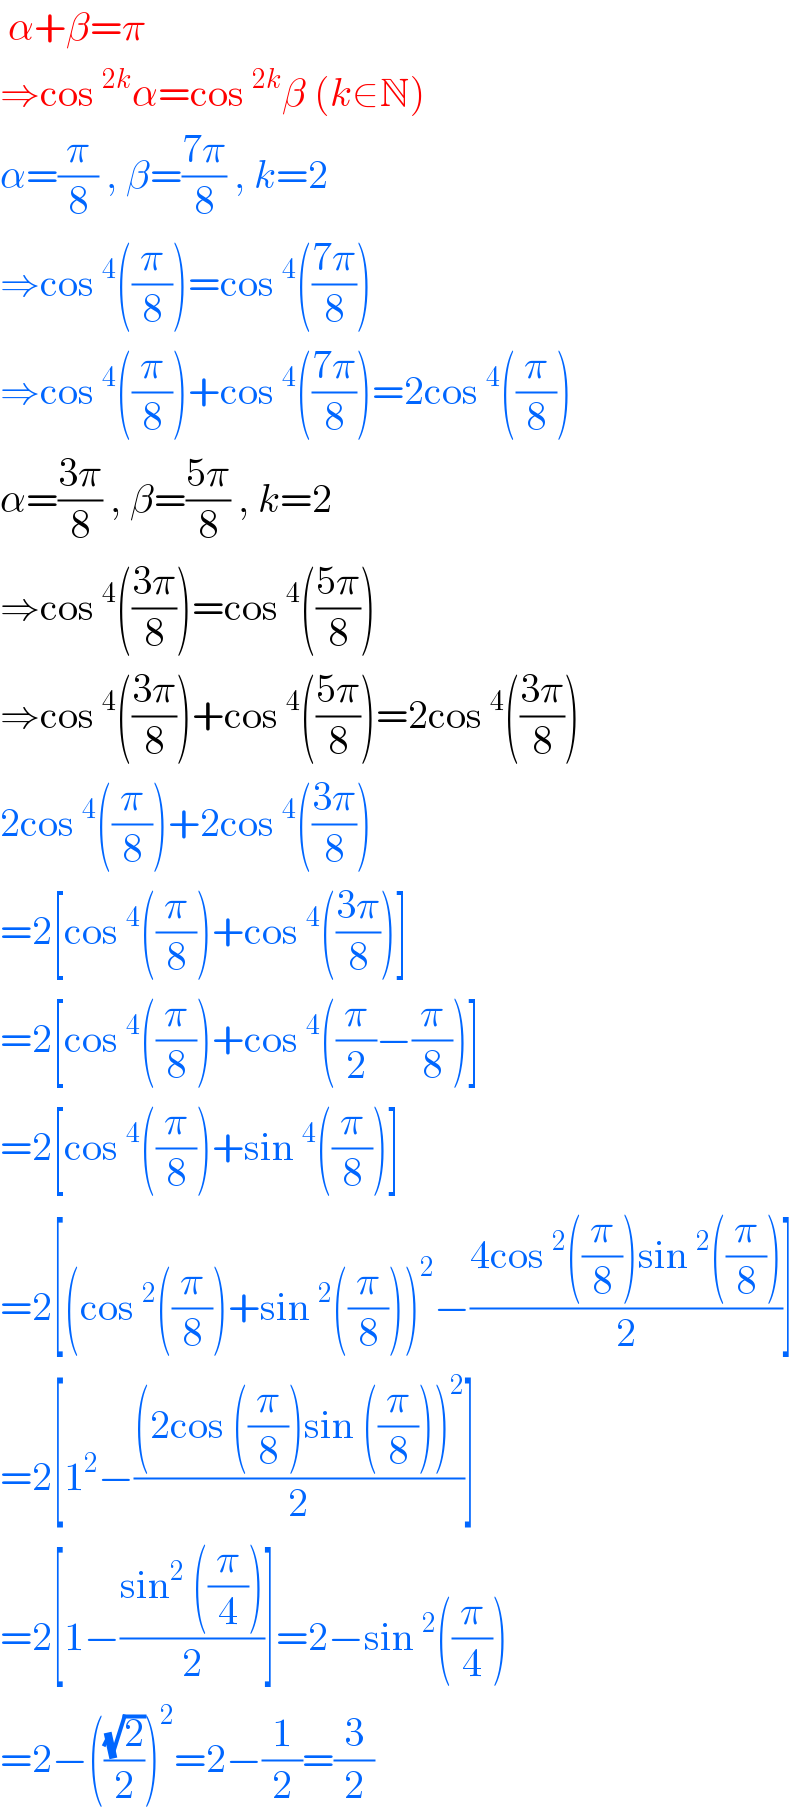  α+β=π  ⇒cos^(2k) α=cos^(2k) β (k∈N)  α=(π/8) , β=((7π)/8) , k=2  ⇒cos^4 ((π/8))=cos^4 (((7π)/8))  ⇒cos^4 ((π/8))+cos^4 (((7π)/8))=2cos^4 ((π/8))  α=((3π)/8) , β=((5π)/8) , k=2  ⇒cos^4 (((3π)/8))=cos^4 (((5π)/8))  ⇒cos^4 (((3π)/8))+cos^4 (((5π)/8))=2cos^4 (((3π)/8))  2cos^4 ((π/8))+2cos^4 (((3π)/8))  =2[cos^4 ((π/8))+cos^4 (((3π)/8))]  =2[cos^4 ((π/8))+cos^4 ((π/2)−(π/8))]  =2[cos^4 ((π/8))+sin^4 ((π/8))]  =2[(cos^2 ((π/8))+sin^2 ((π/8)))^2 −((4cos^2 ((π/8))sin^2 ((π/8)))/2)]  =2[1^2 −(((2cos ((π/8))sin ((π/8)))^2 )/2)]  =2[1−((sin^2  ((π/4)))/2)]=2−sin^2 ((π/4))  =2−(((√2)/2))^2 =2−(1/2)=(3/2)  